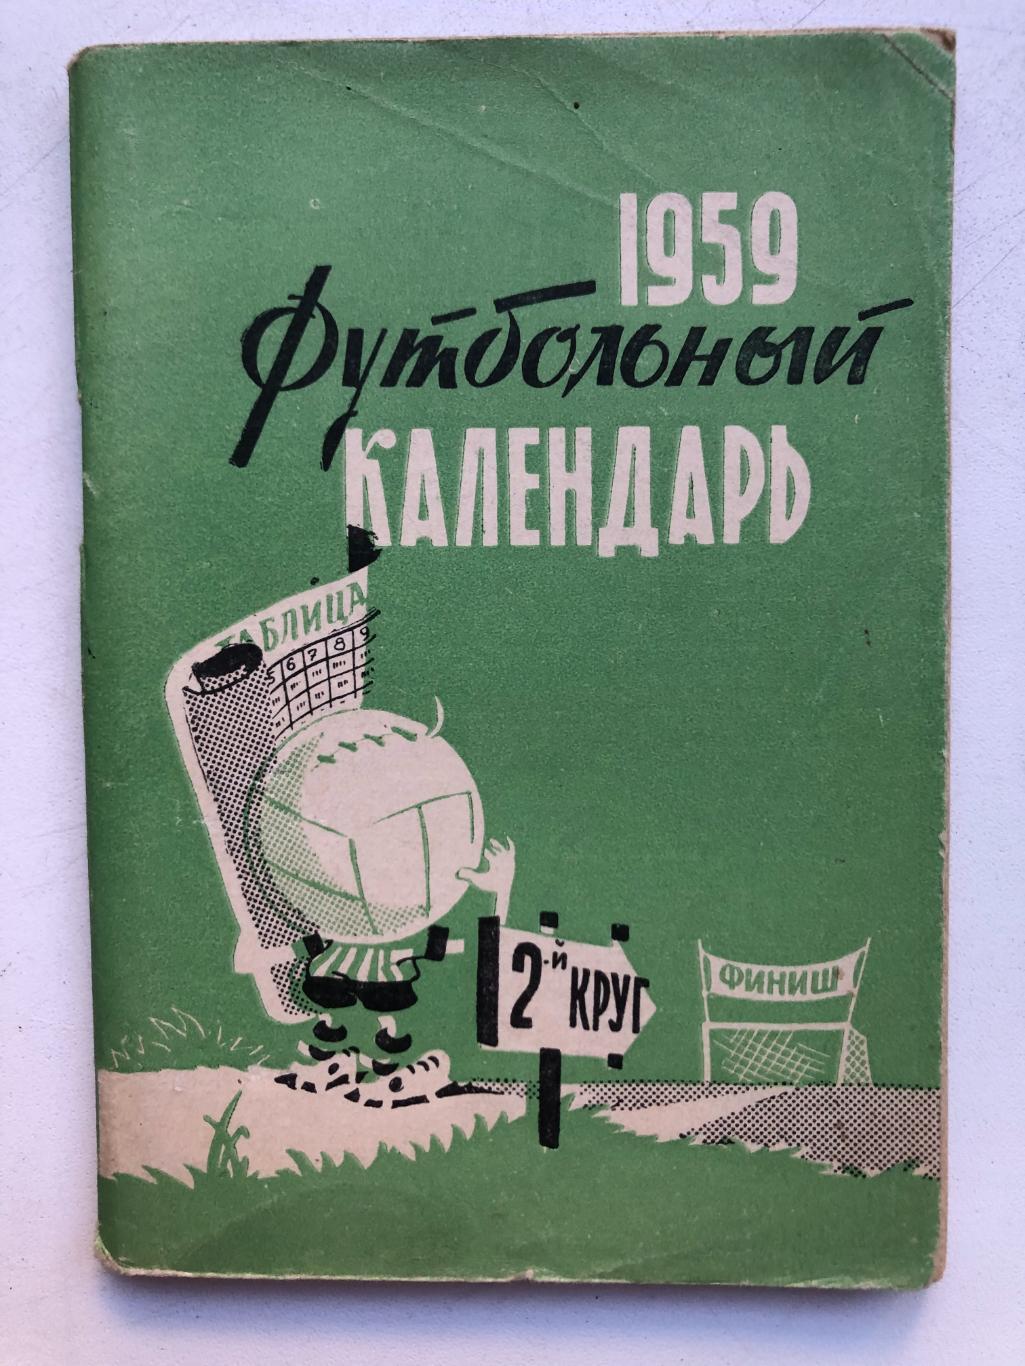 Футбольный календарь 1959 второй круг Московская правда